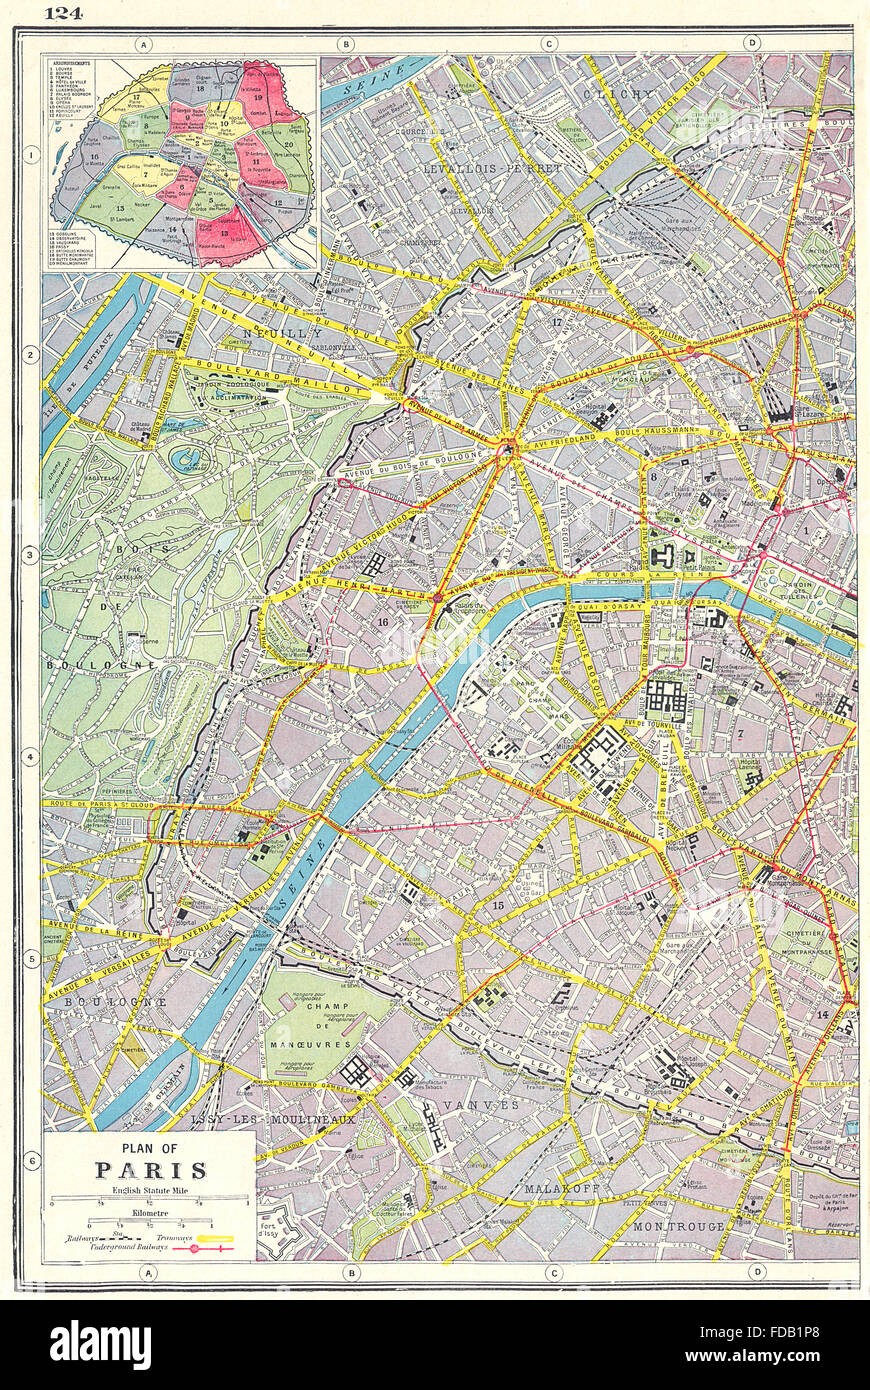 PARIS WEST: Plan of Paris west sheet; inset Arrondissements, 1920 vintage map Stock Photo